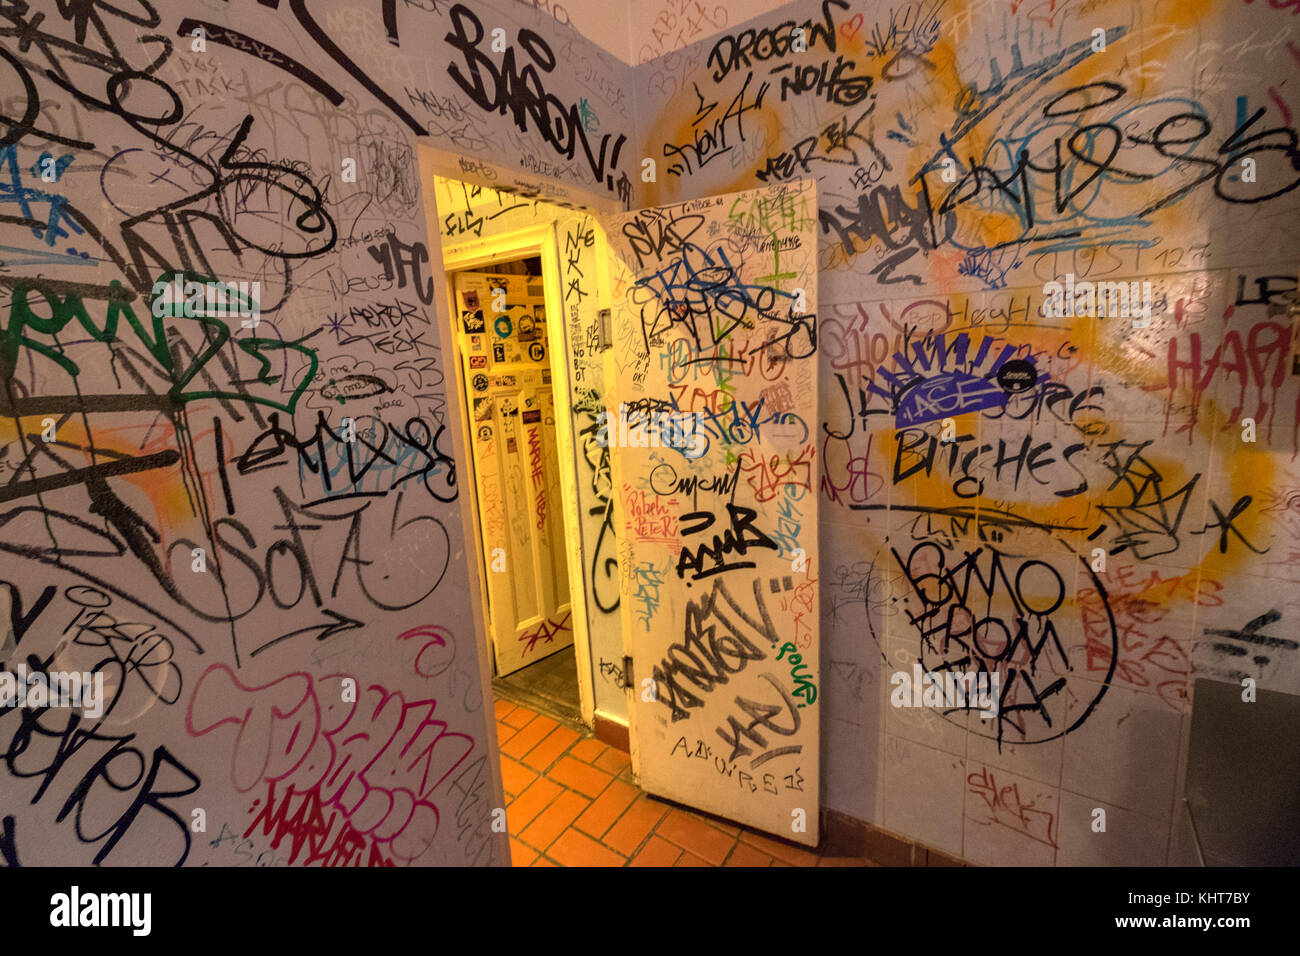 Graffiti on a toilet wall Stock Photo - Alamy